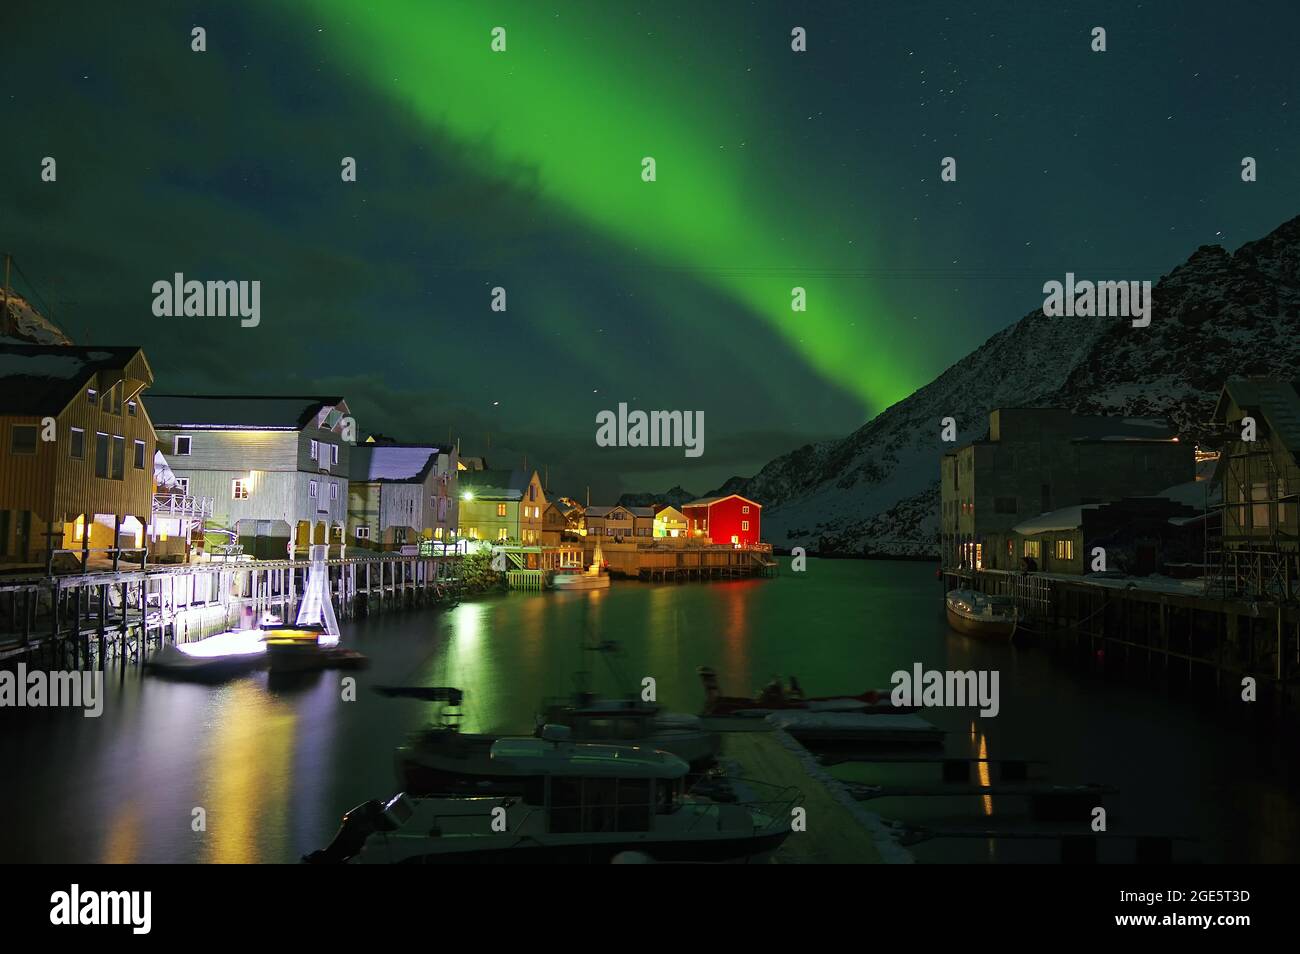 aurores boréales (aurora borealis) sur petit port, bâtiment en bois, pêche, Nyksund, Vesteralen, Nordland, Norvège Banque D'Images